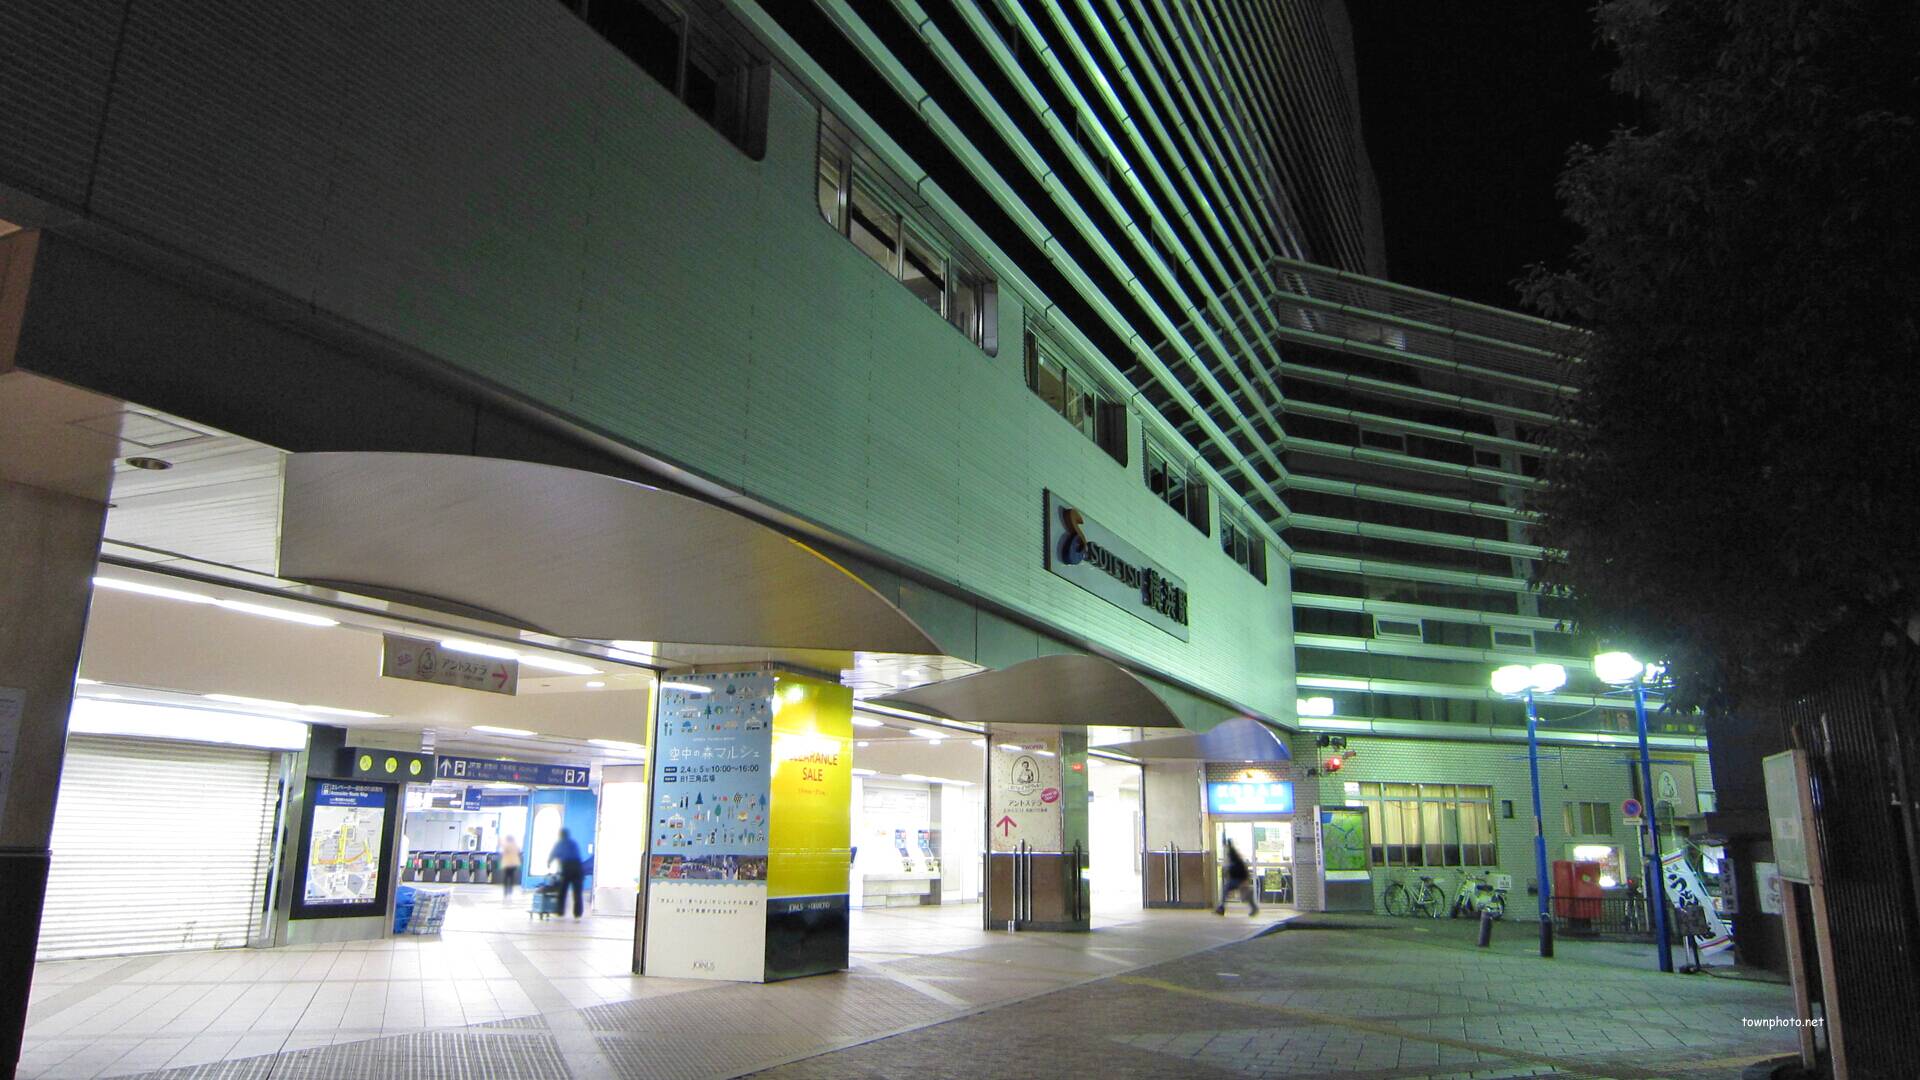 写真54枚 横浜駅みなみ西口 五番街 彫刻通りの風景 街並み紹介